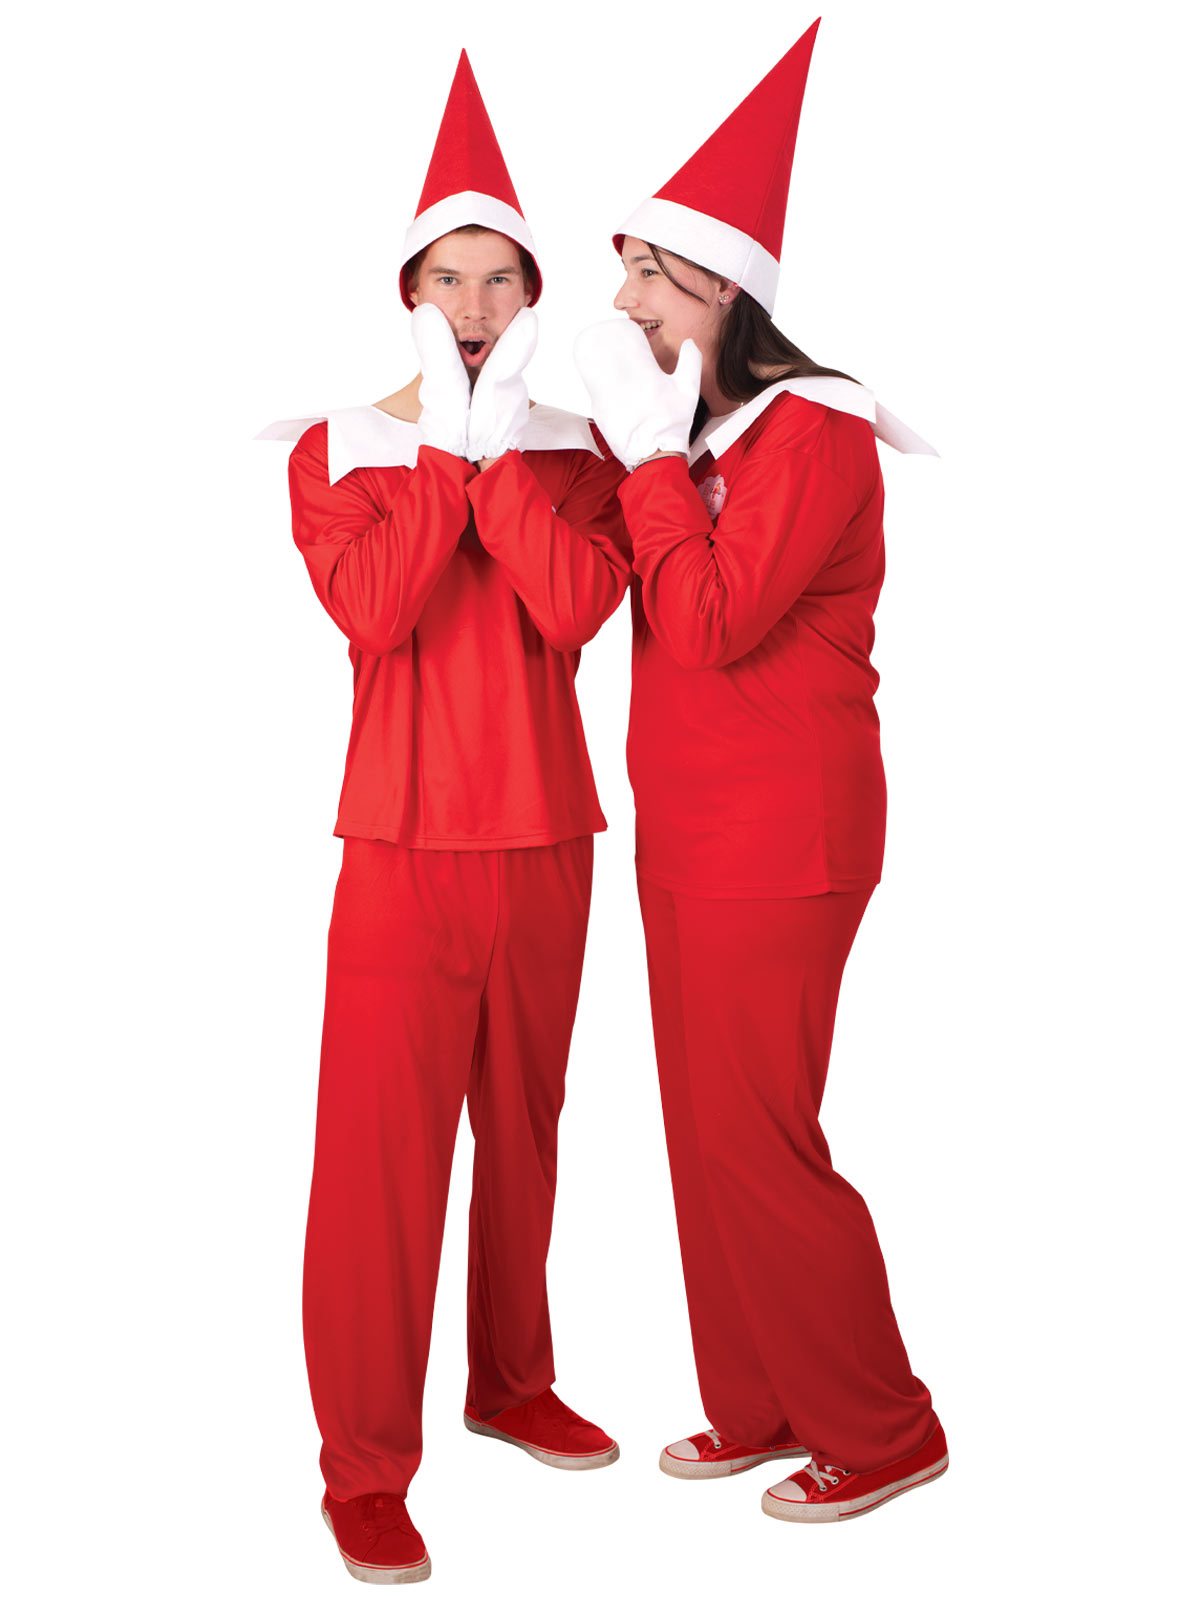 Costume Adult Funny Elf On The Shelf Unisex Christmas/Xmas Large